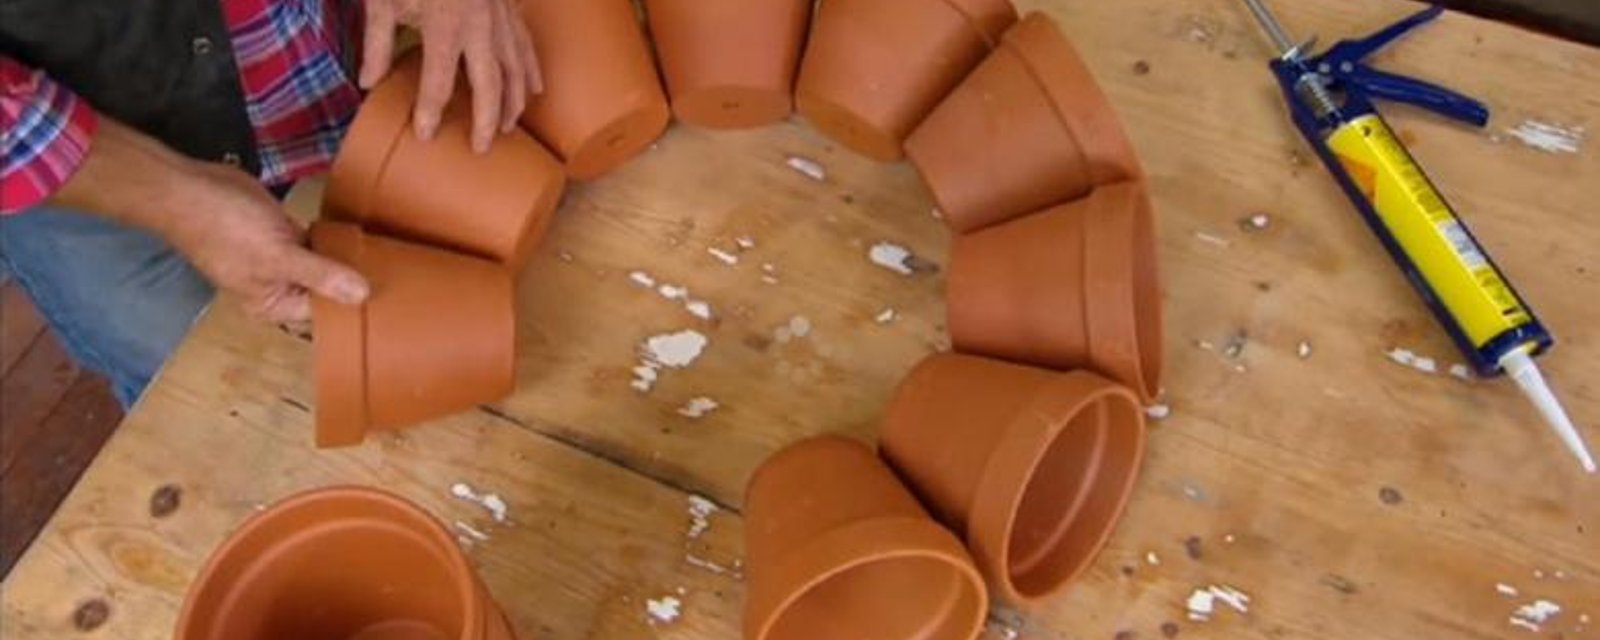 Un jardinier fait de l'art Funky avec des pots en Terracotta! Décorez votre jardin originalement! 